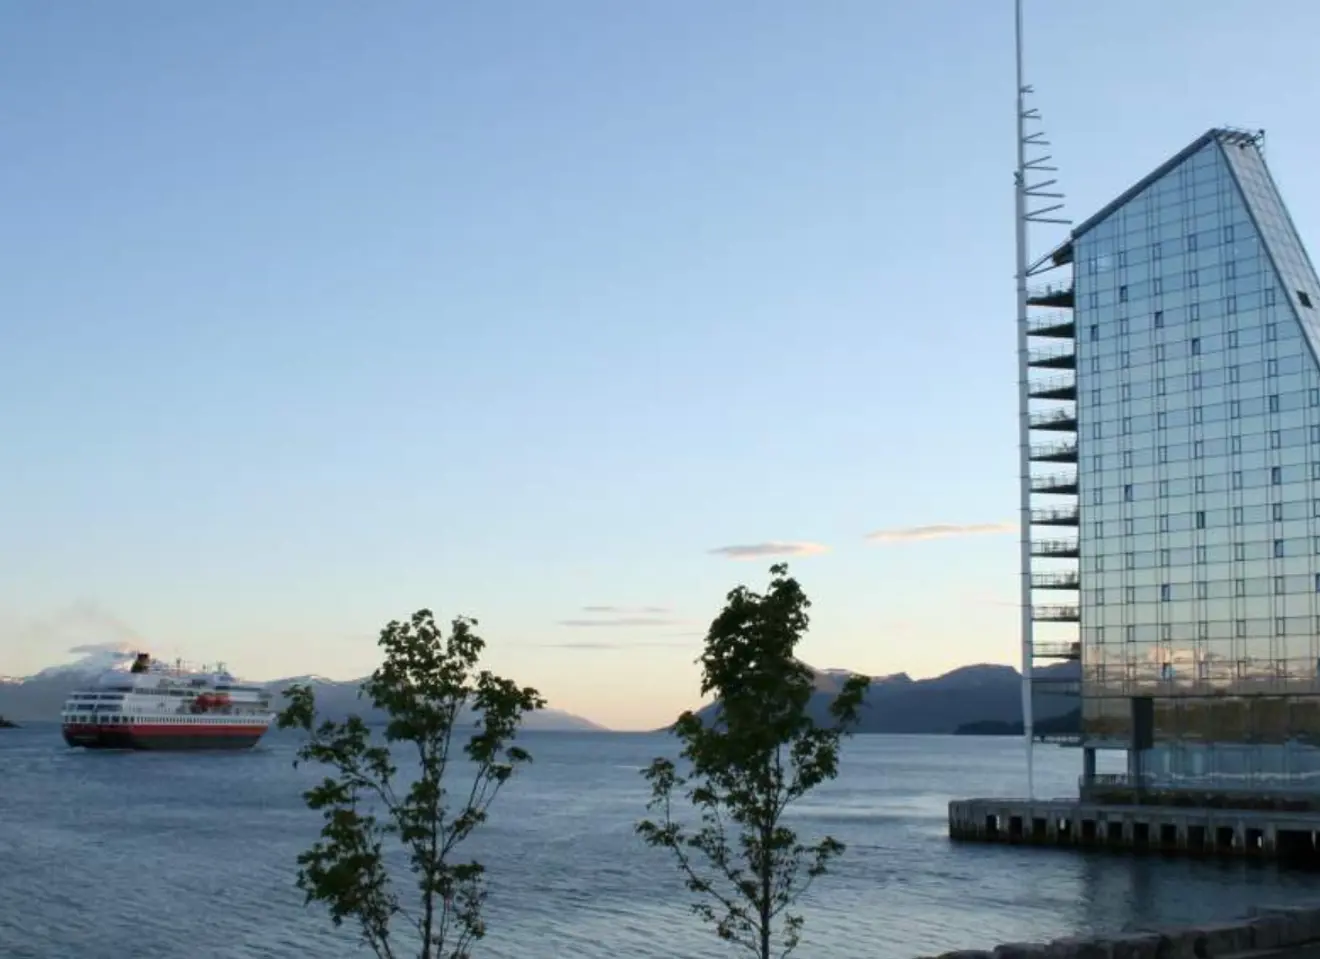 Hotel Seilet i Molde med Hurtigruten båt på havet foran